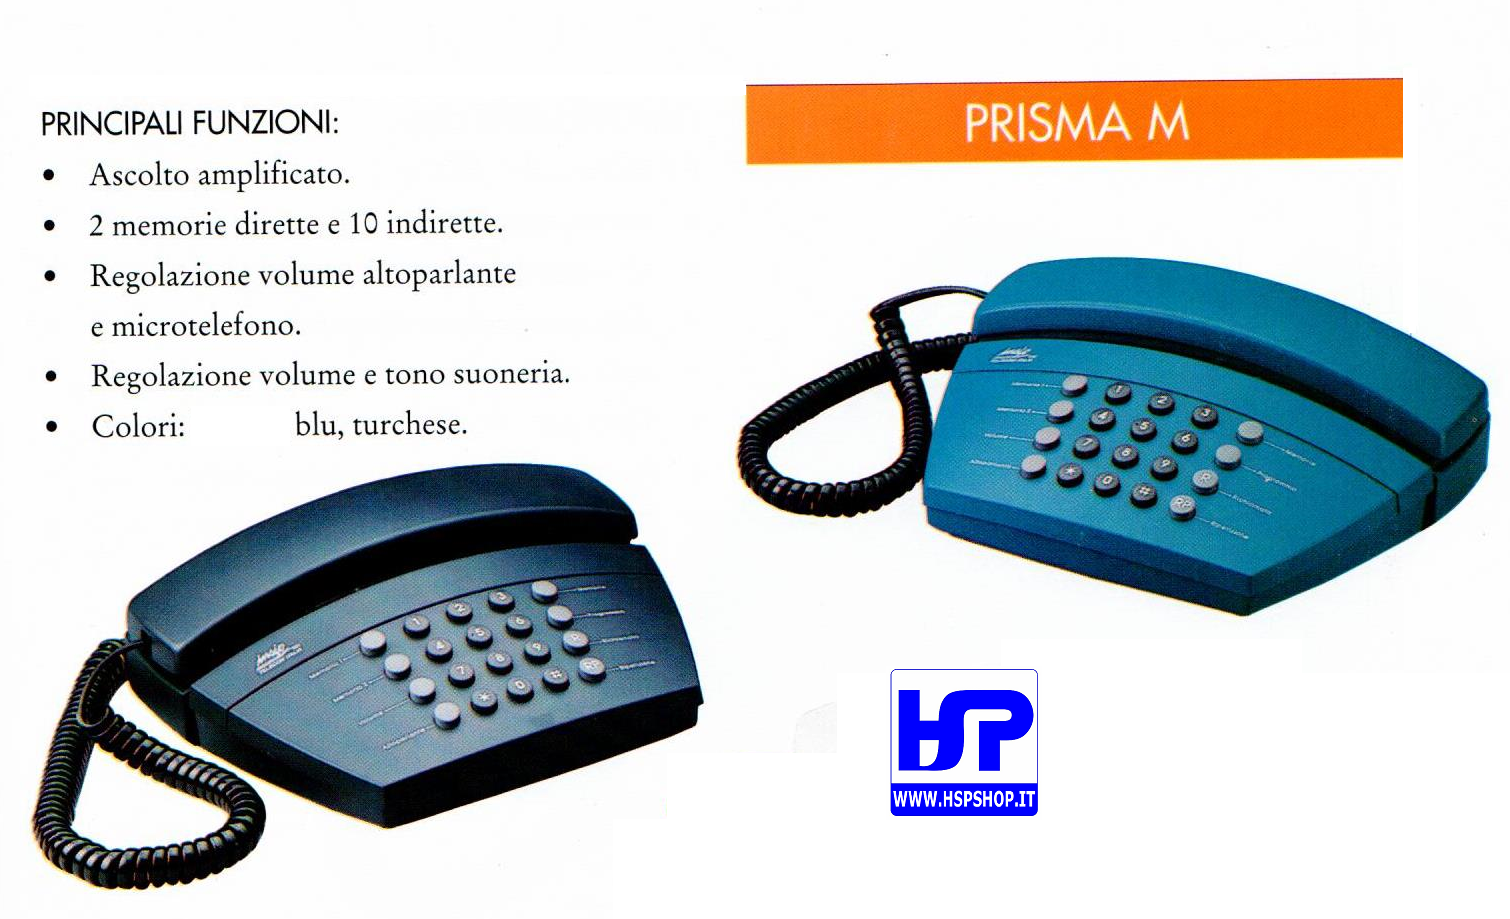 INSIP - PRISMA M - TELEFONO MULTIFUNZIONE